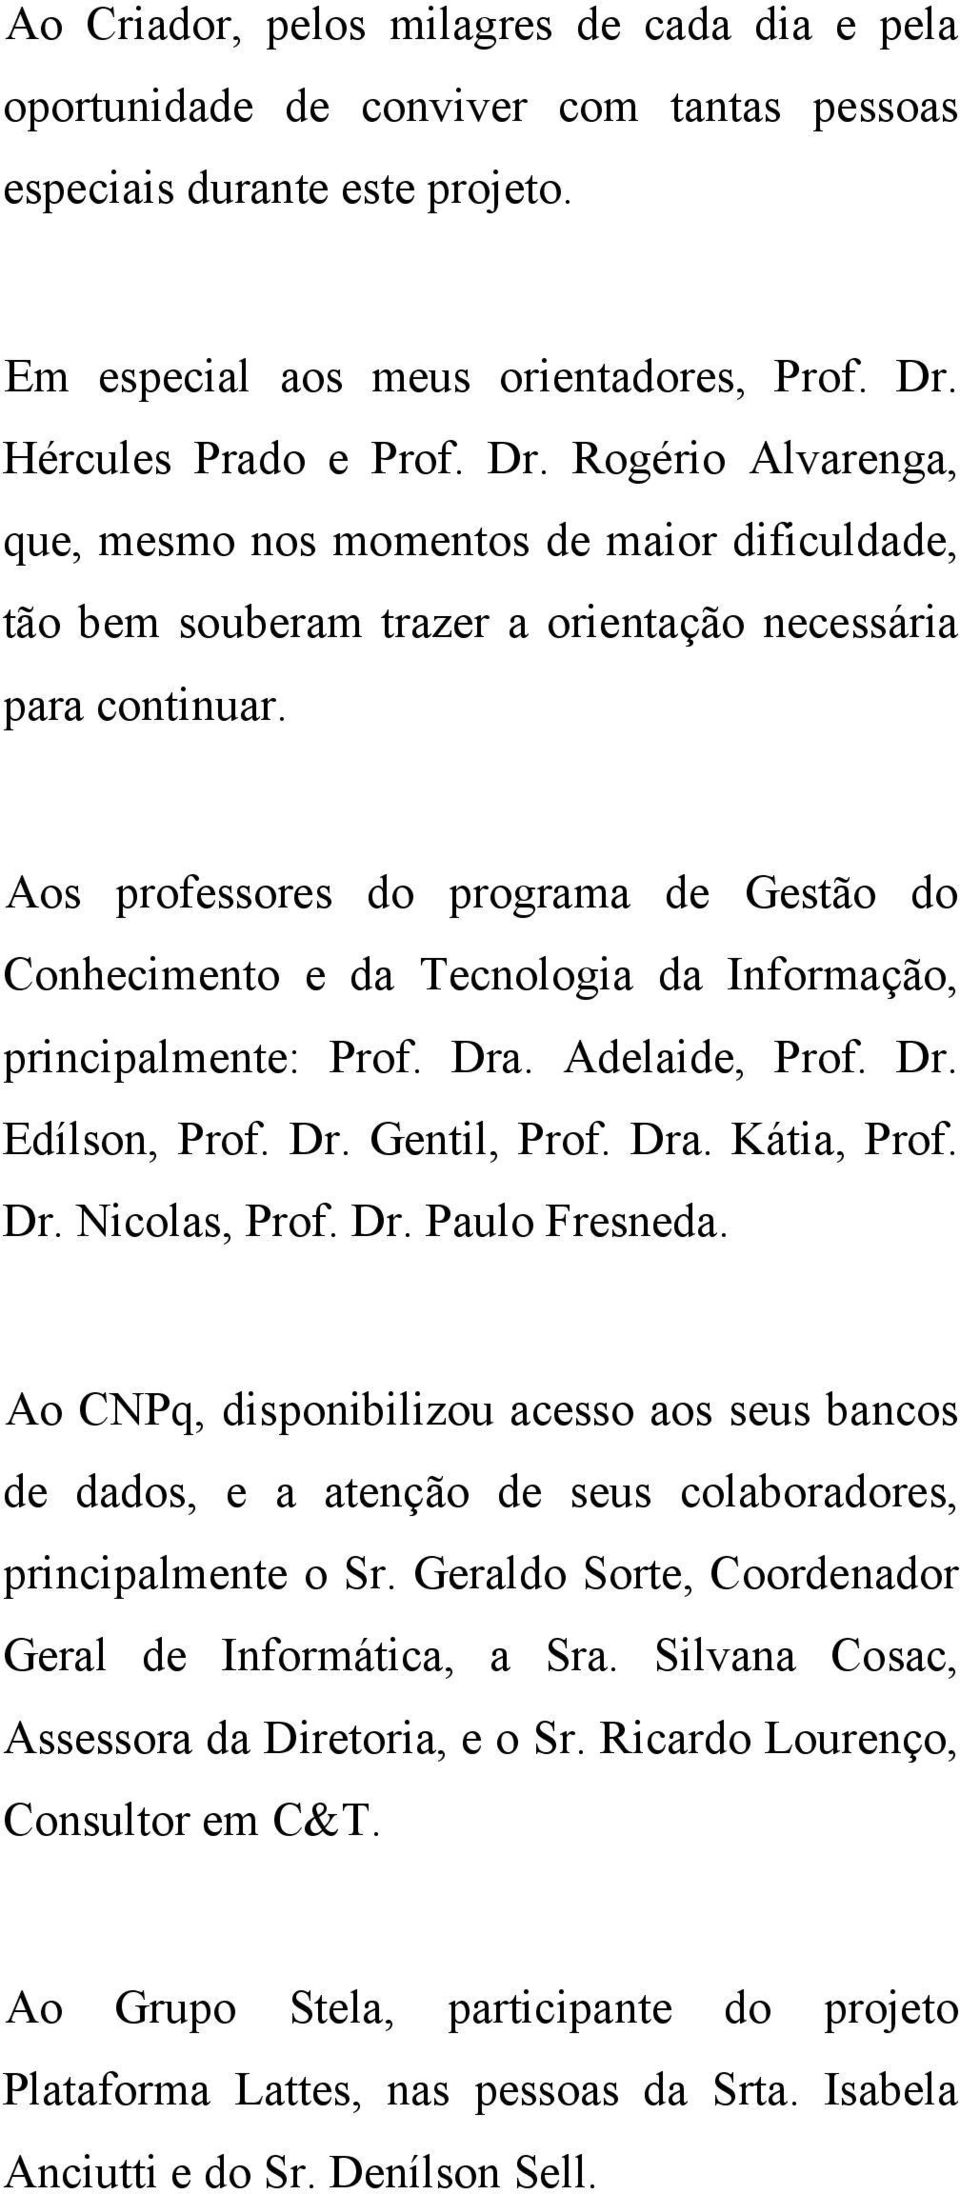 Aos professores do programa de Gestão do Conhecimento e da Tecnologia da Informação, principalmente: Prof. Dra. Adelaide, Prof. Dr. Edílson, Prof. Dr. Gentil, Prof. Dra. Kátia, Prof. Dr. Nicolas, Prof.